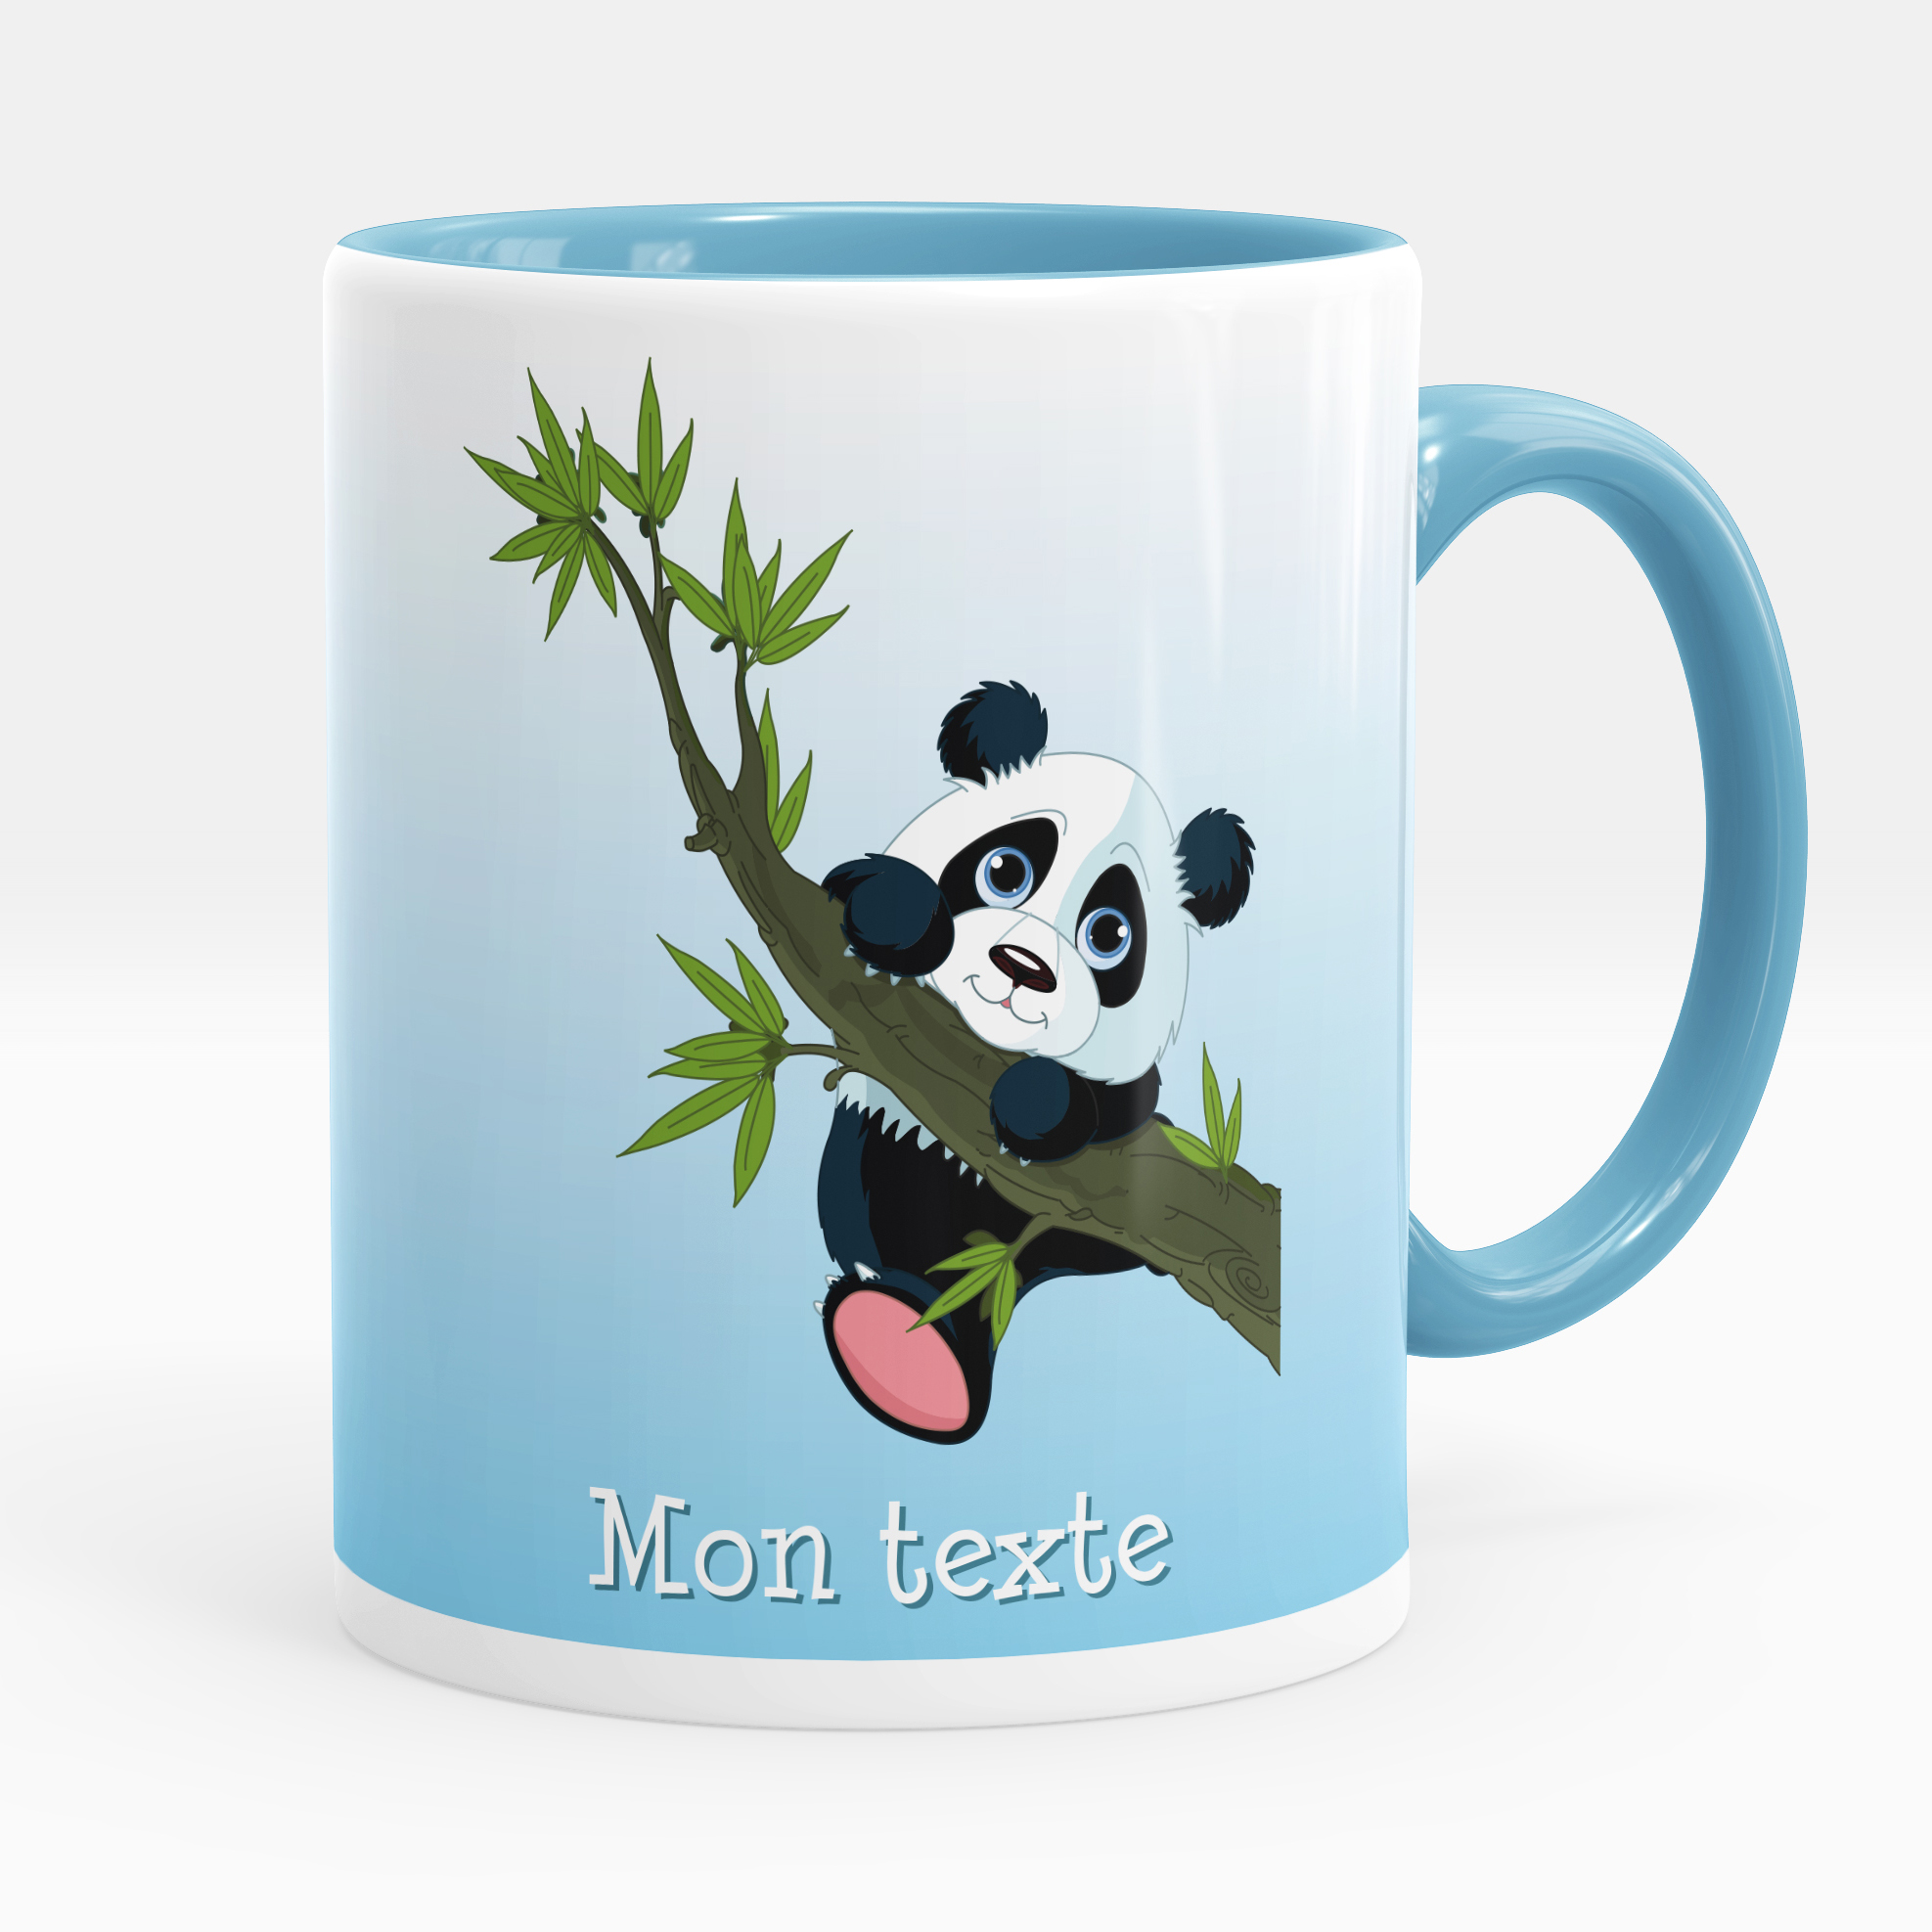 Mug Prénom Personnalisable Panda Grain Café